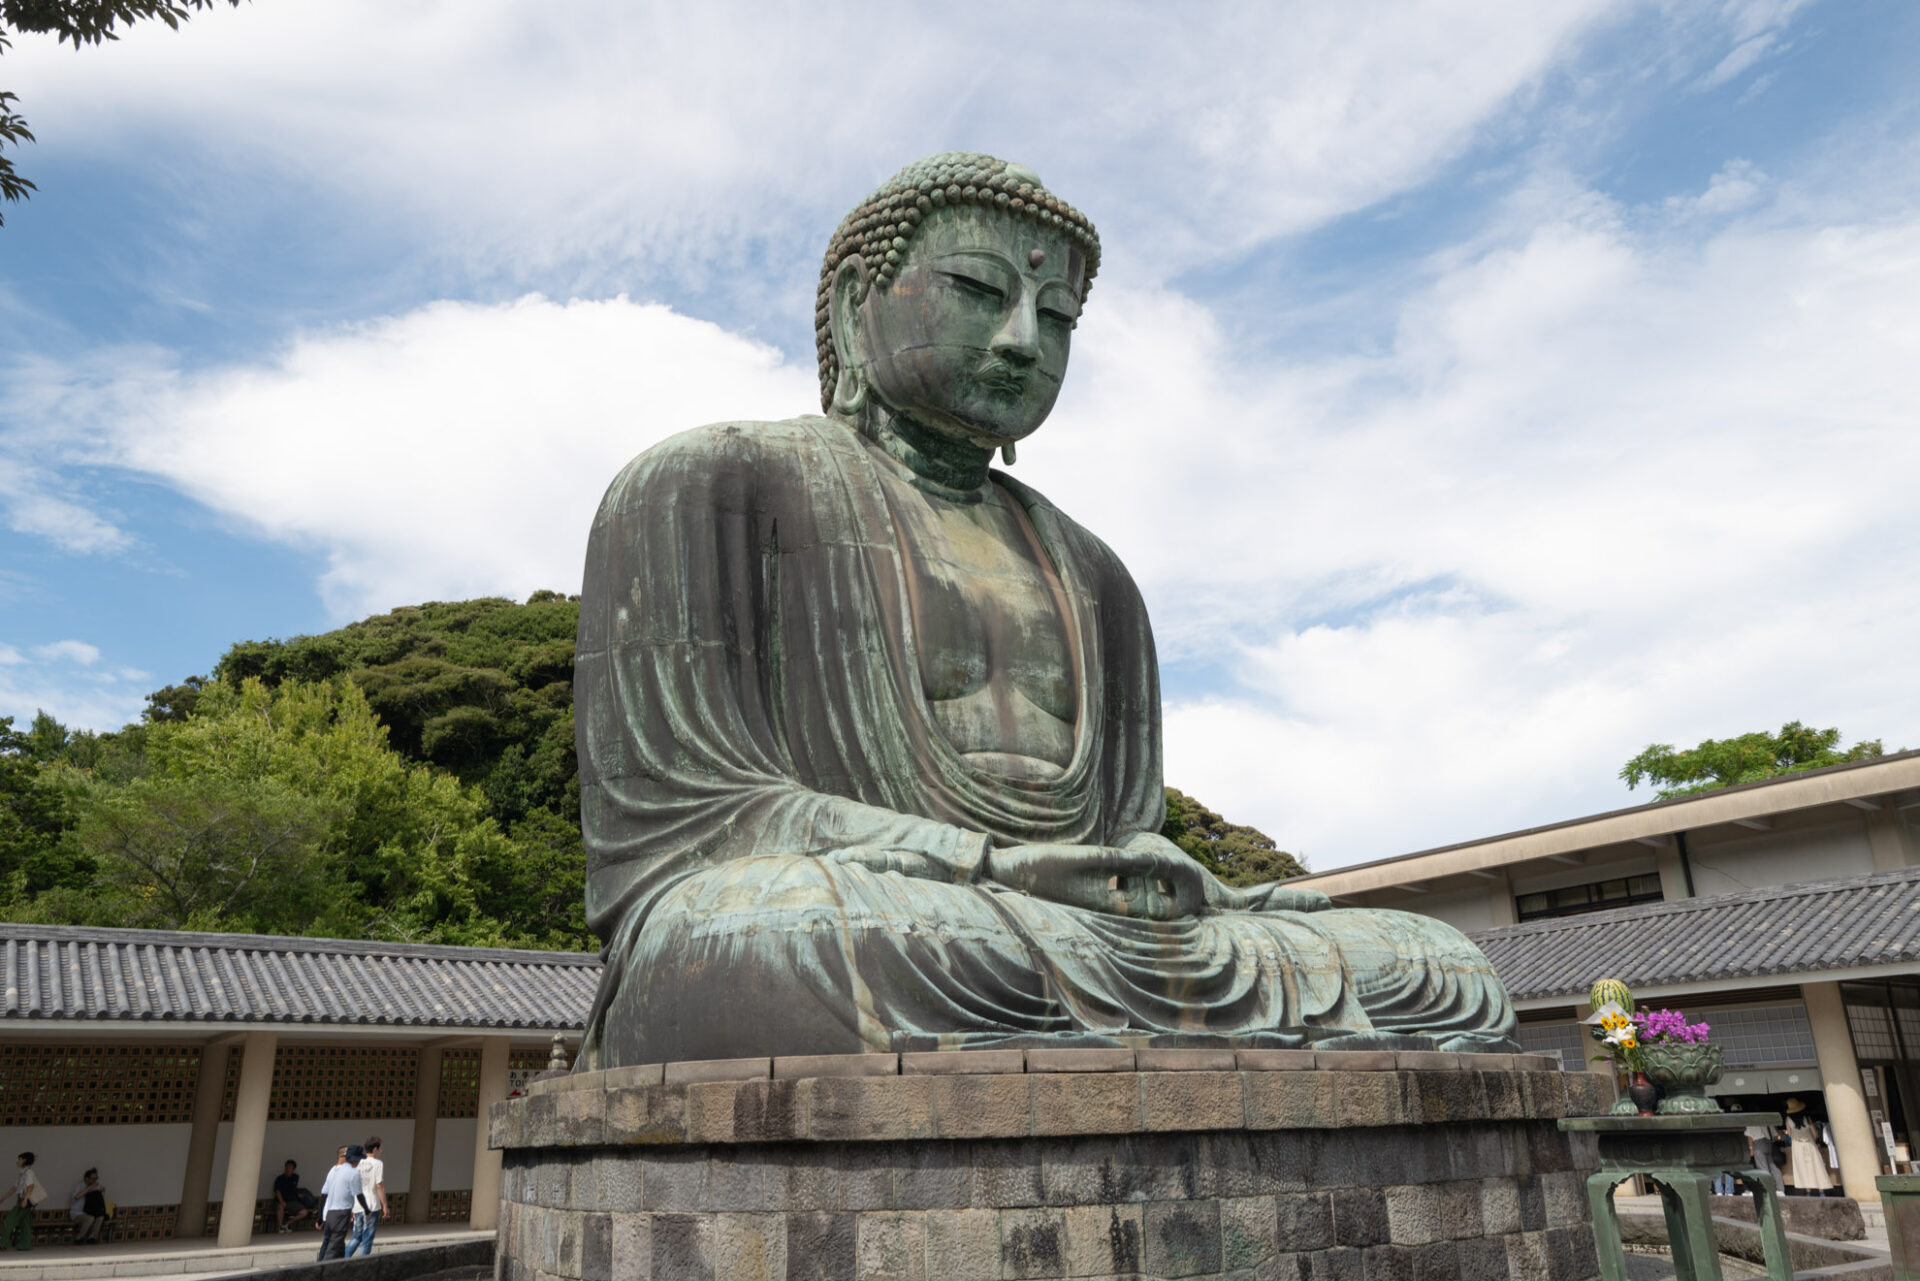 Statua del Grande Buddha di bronzo a Kamakura, Giappone, con cielo nuvoloso in sfondo e alberi verdi.